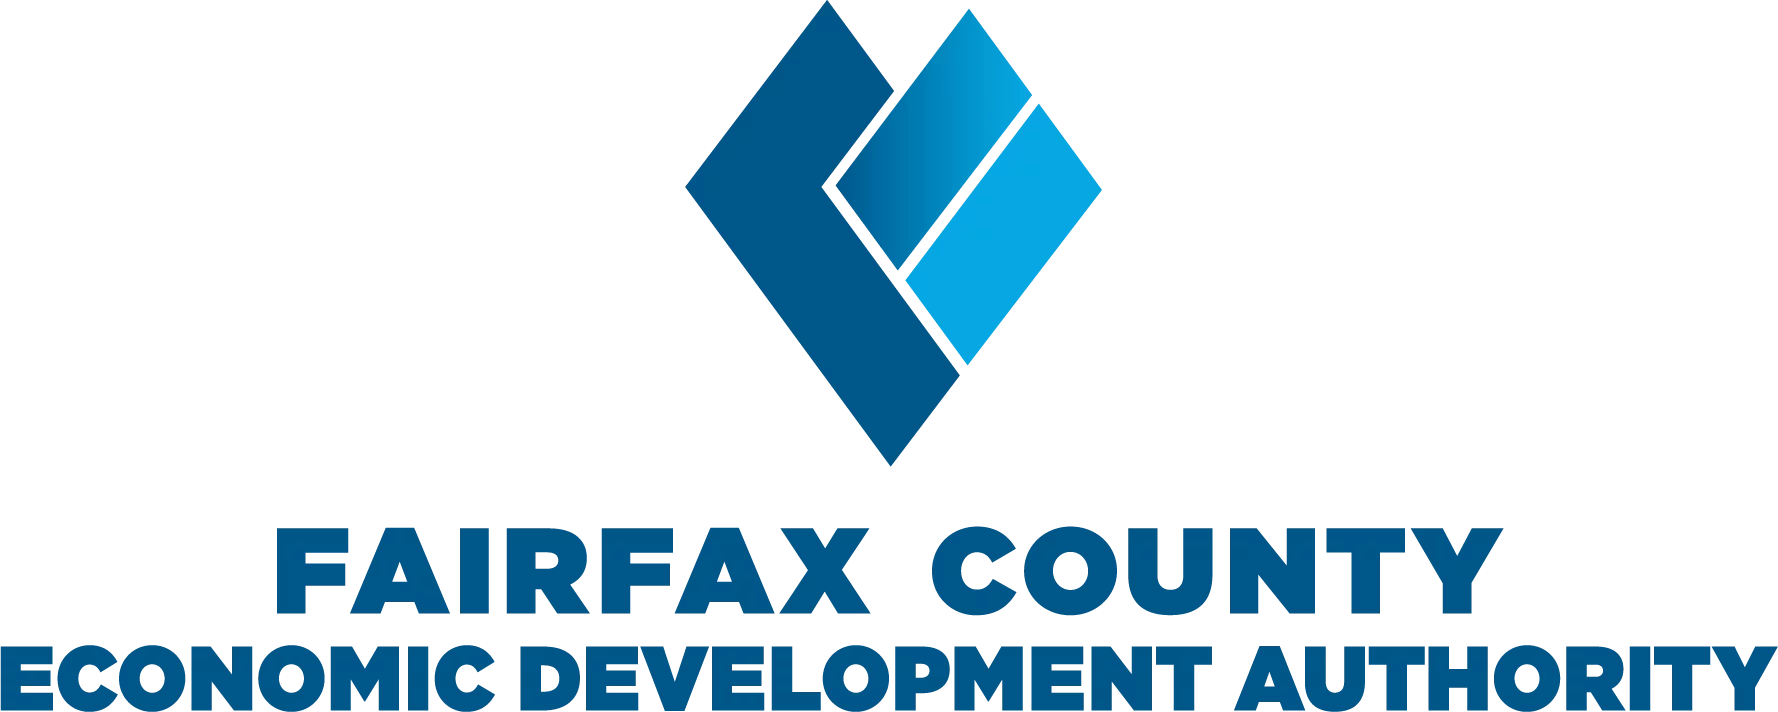 Fairfax County Economic Development Authority Logo